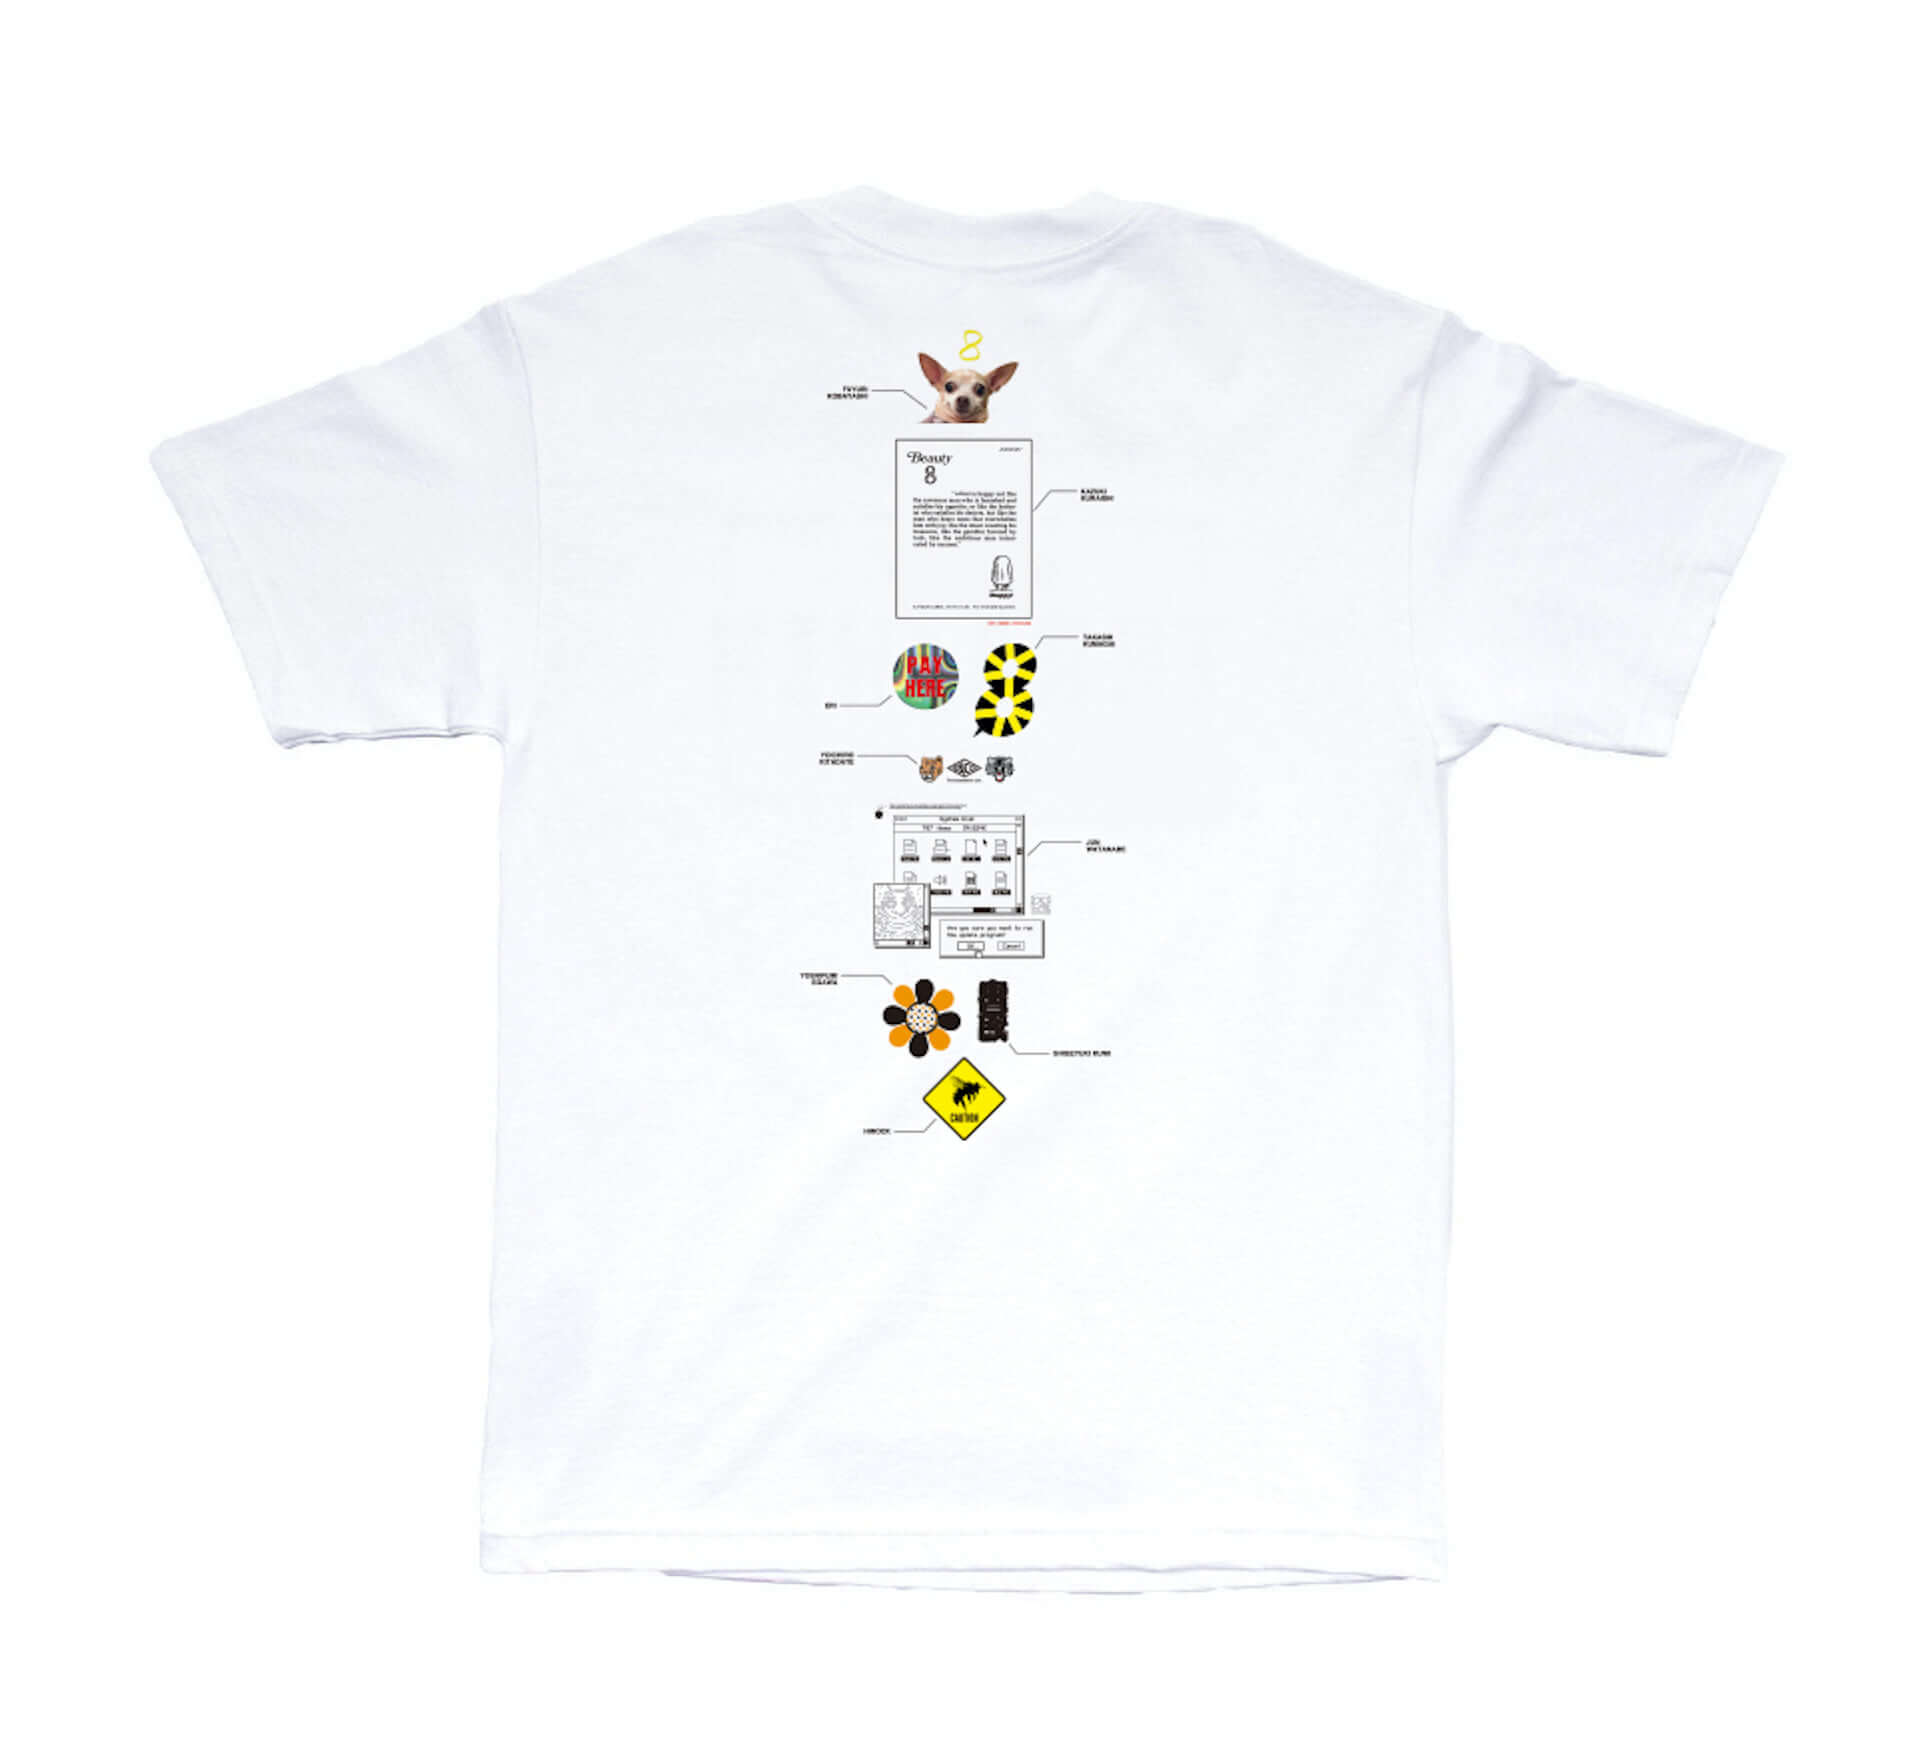 窪塚洋介、長場雄、加賀美健、JUN WATANABEら13名のデザインが1枚に集結！「HATCH」8周年記念Tシャツが登場 lf200720_hatch-tshirt_21-1-1920x1738